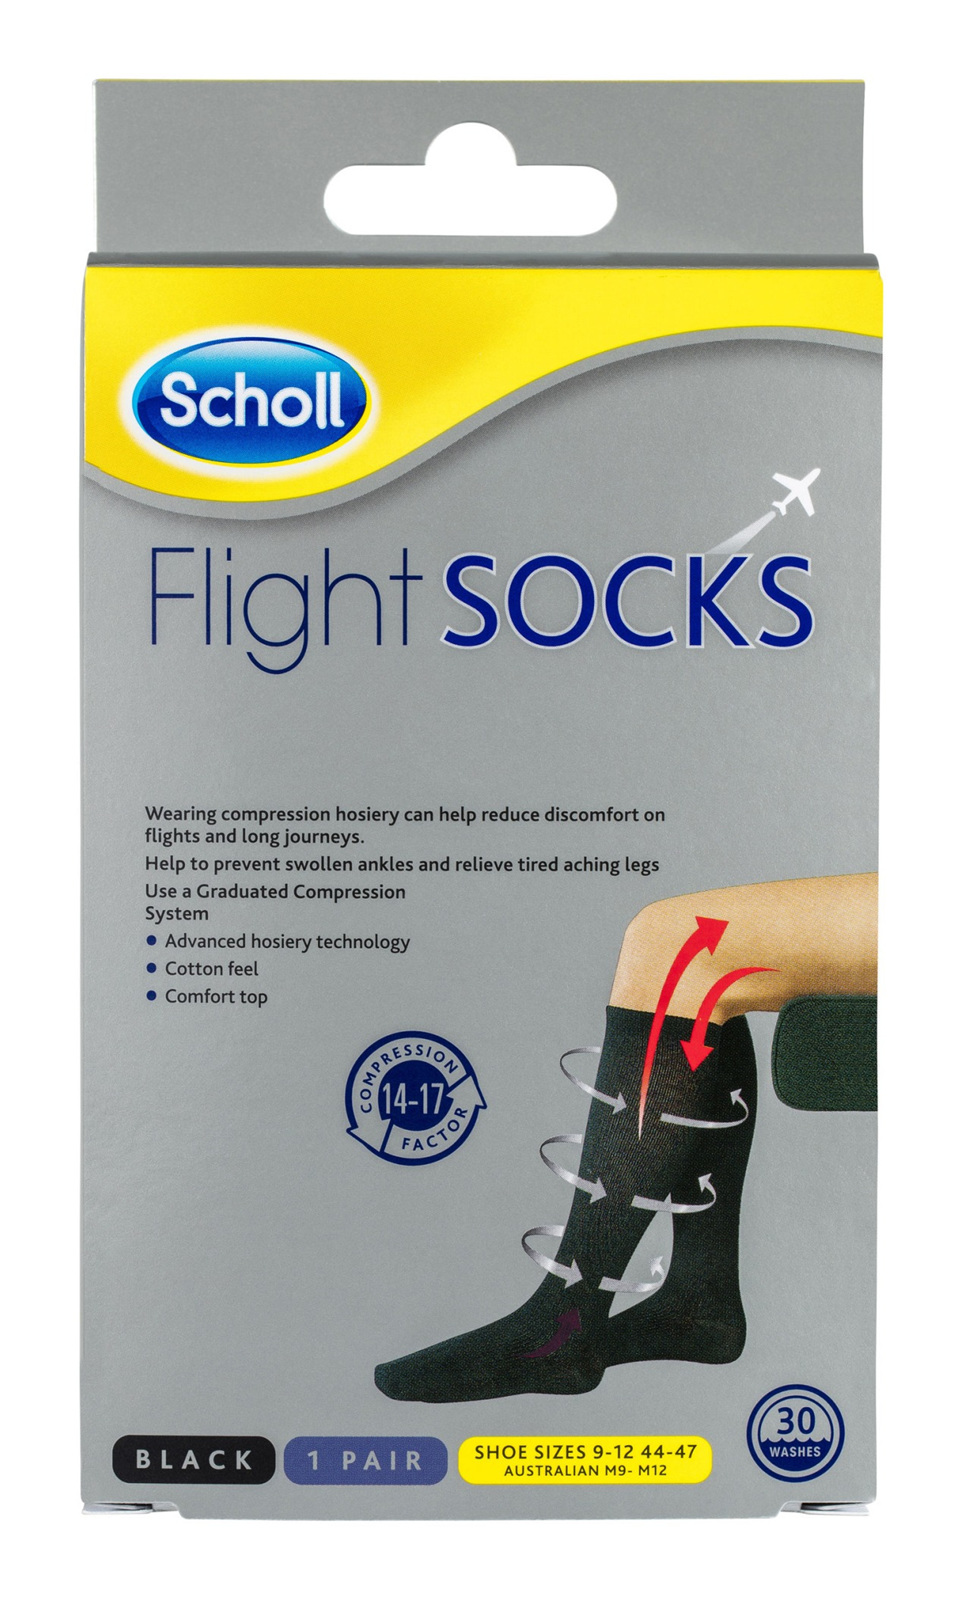 Scholl flight socks